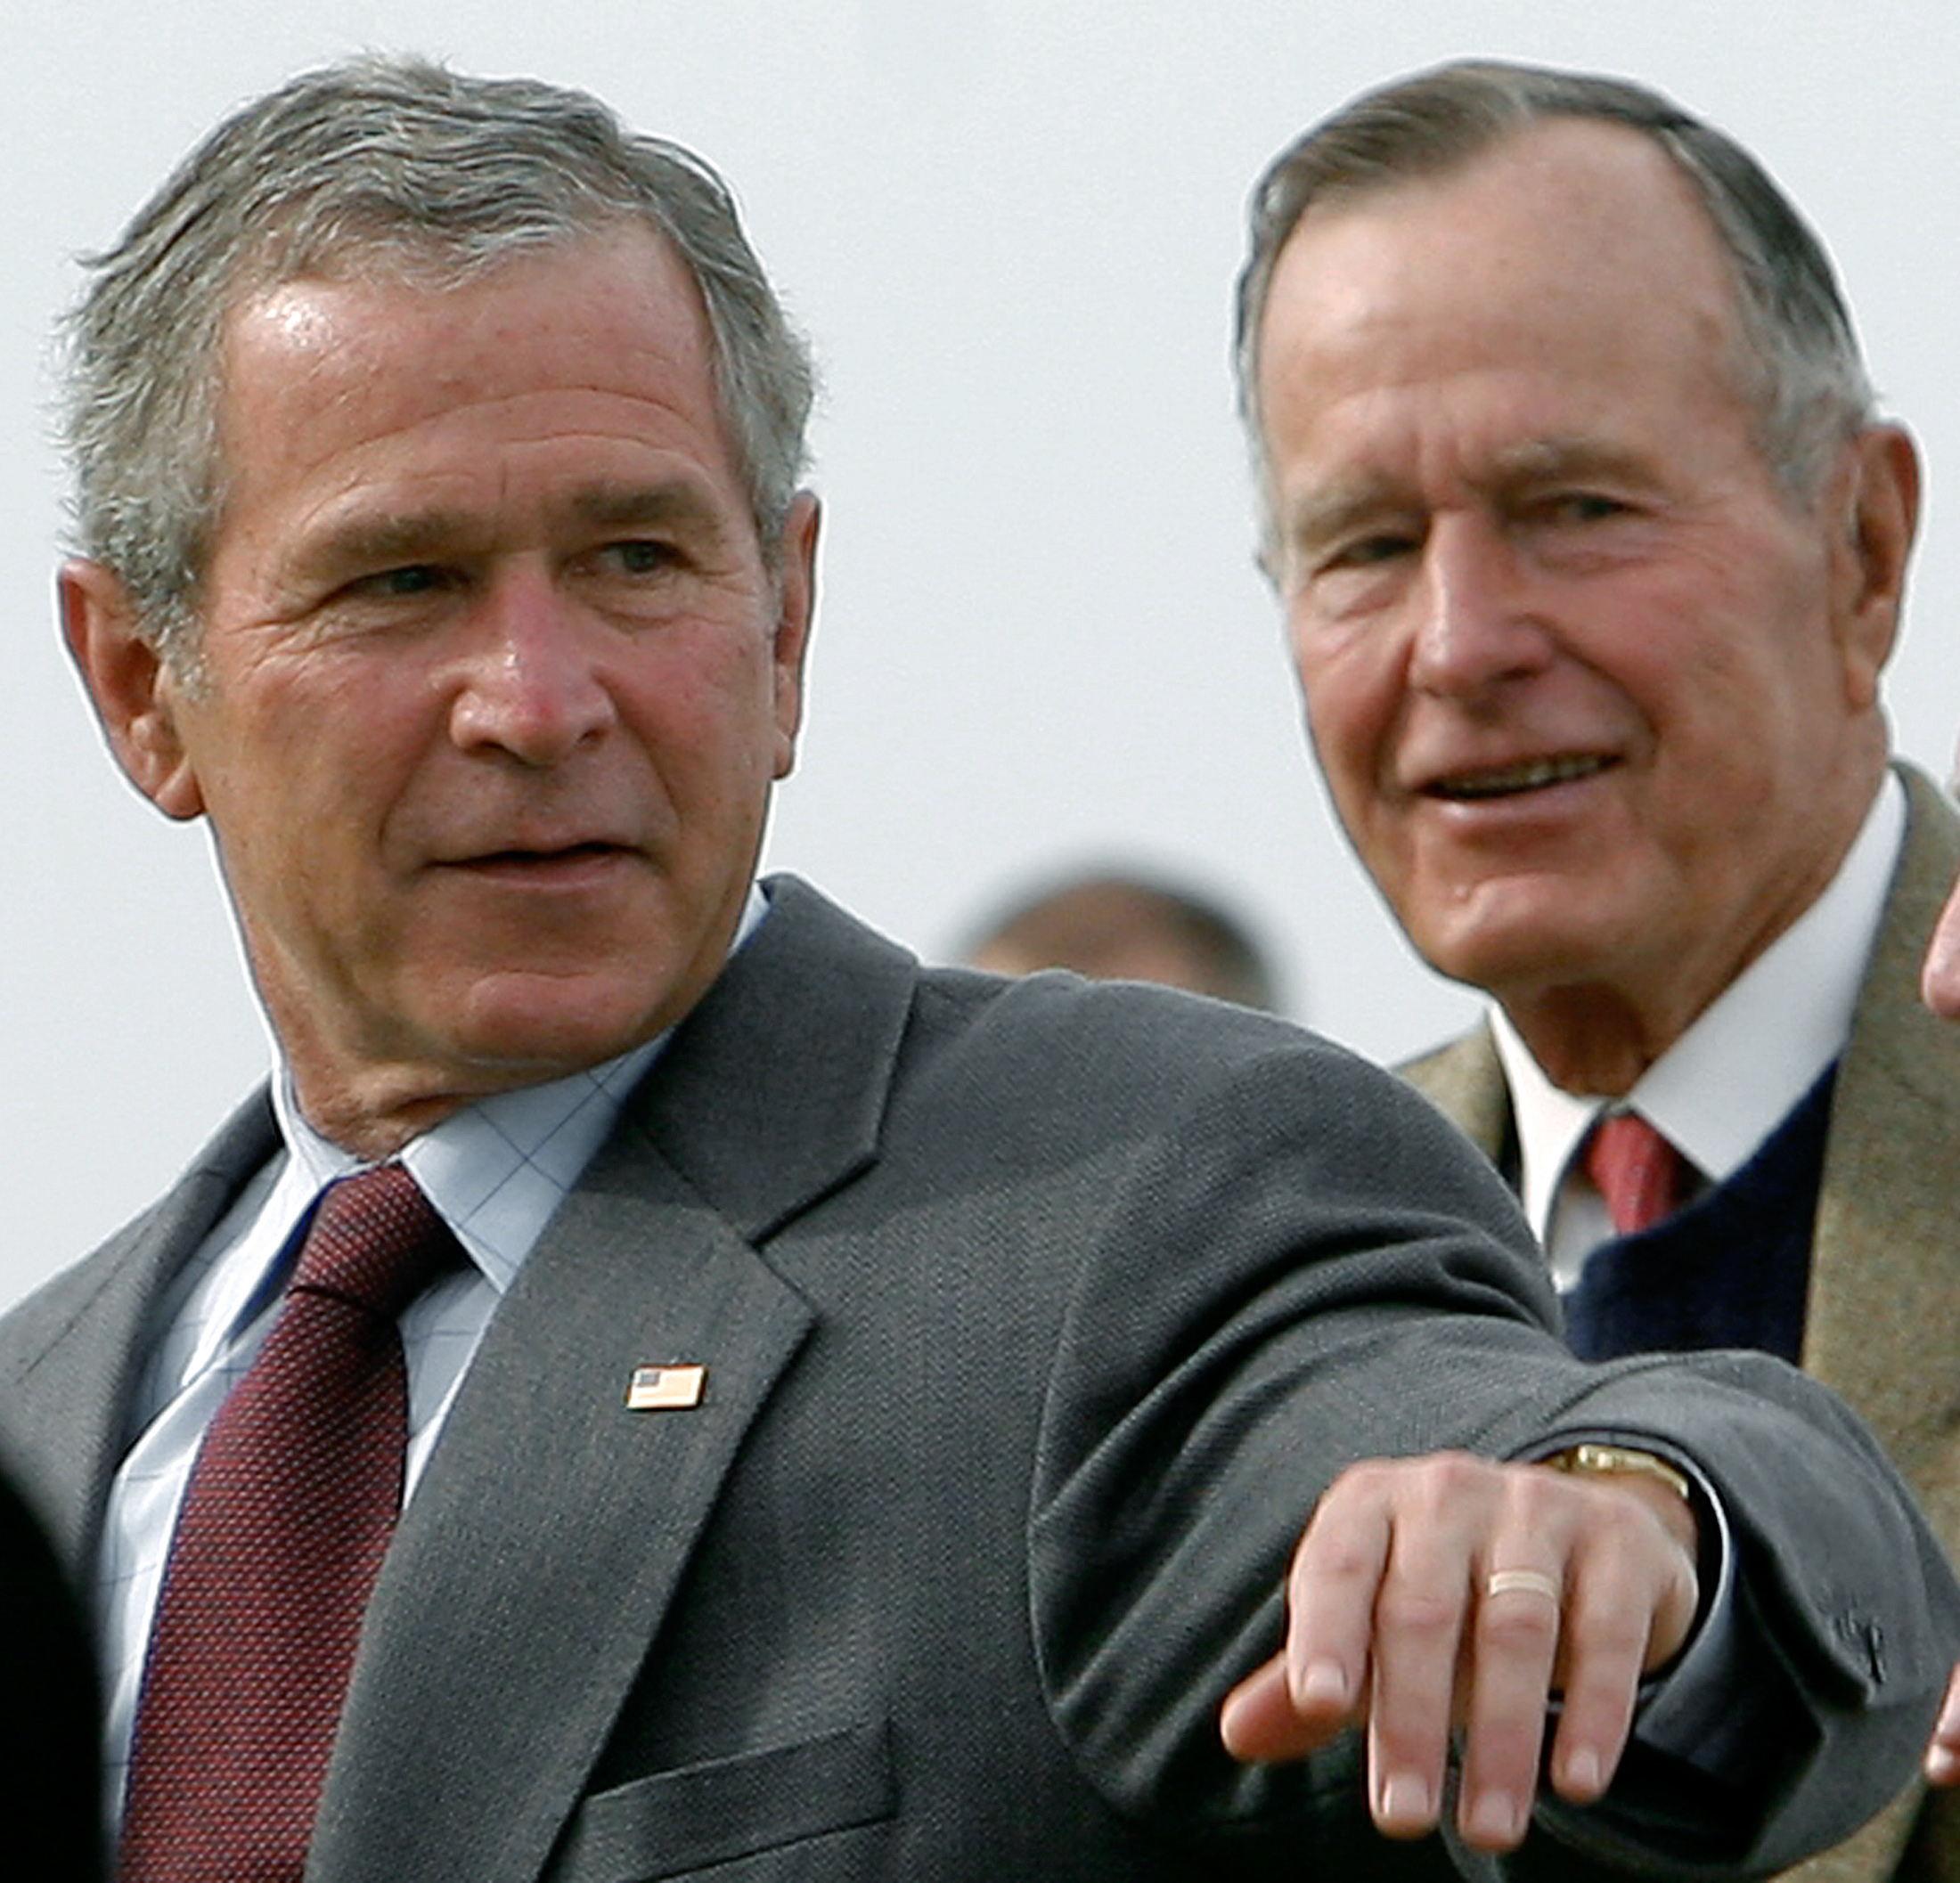 الرئيس الأمريكى الأسبق جورج بوش